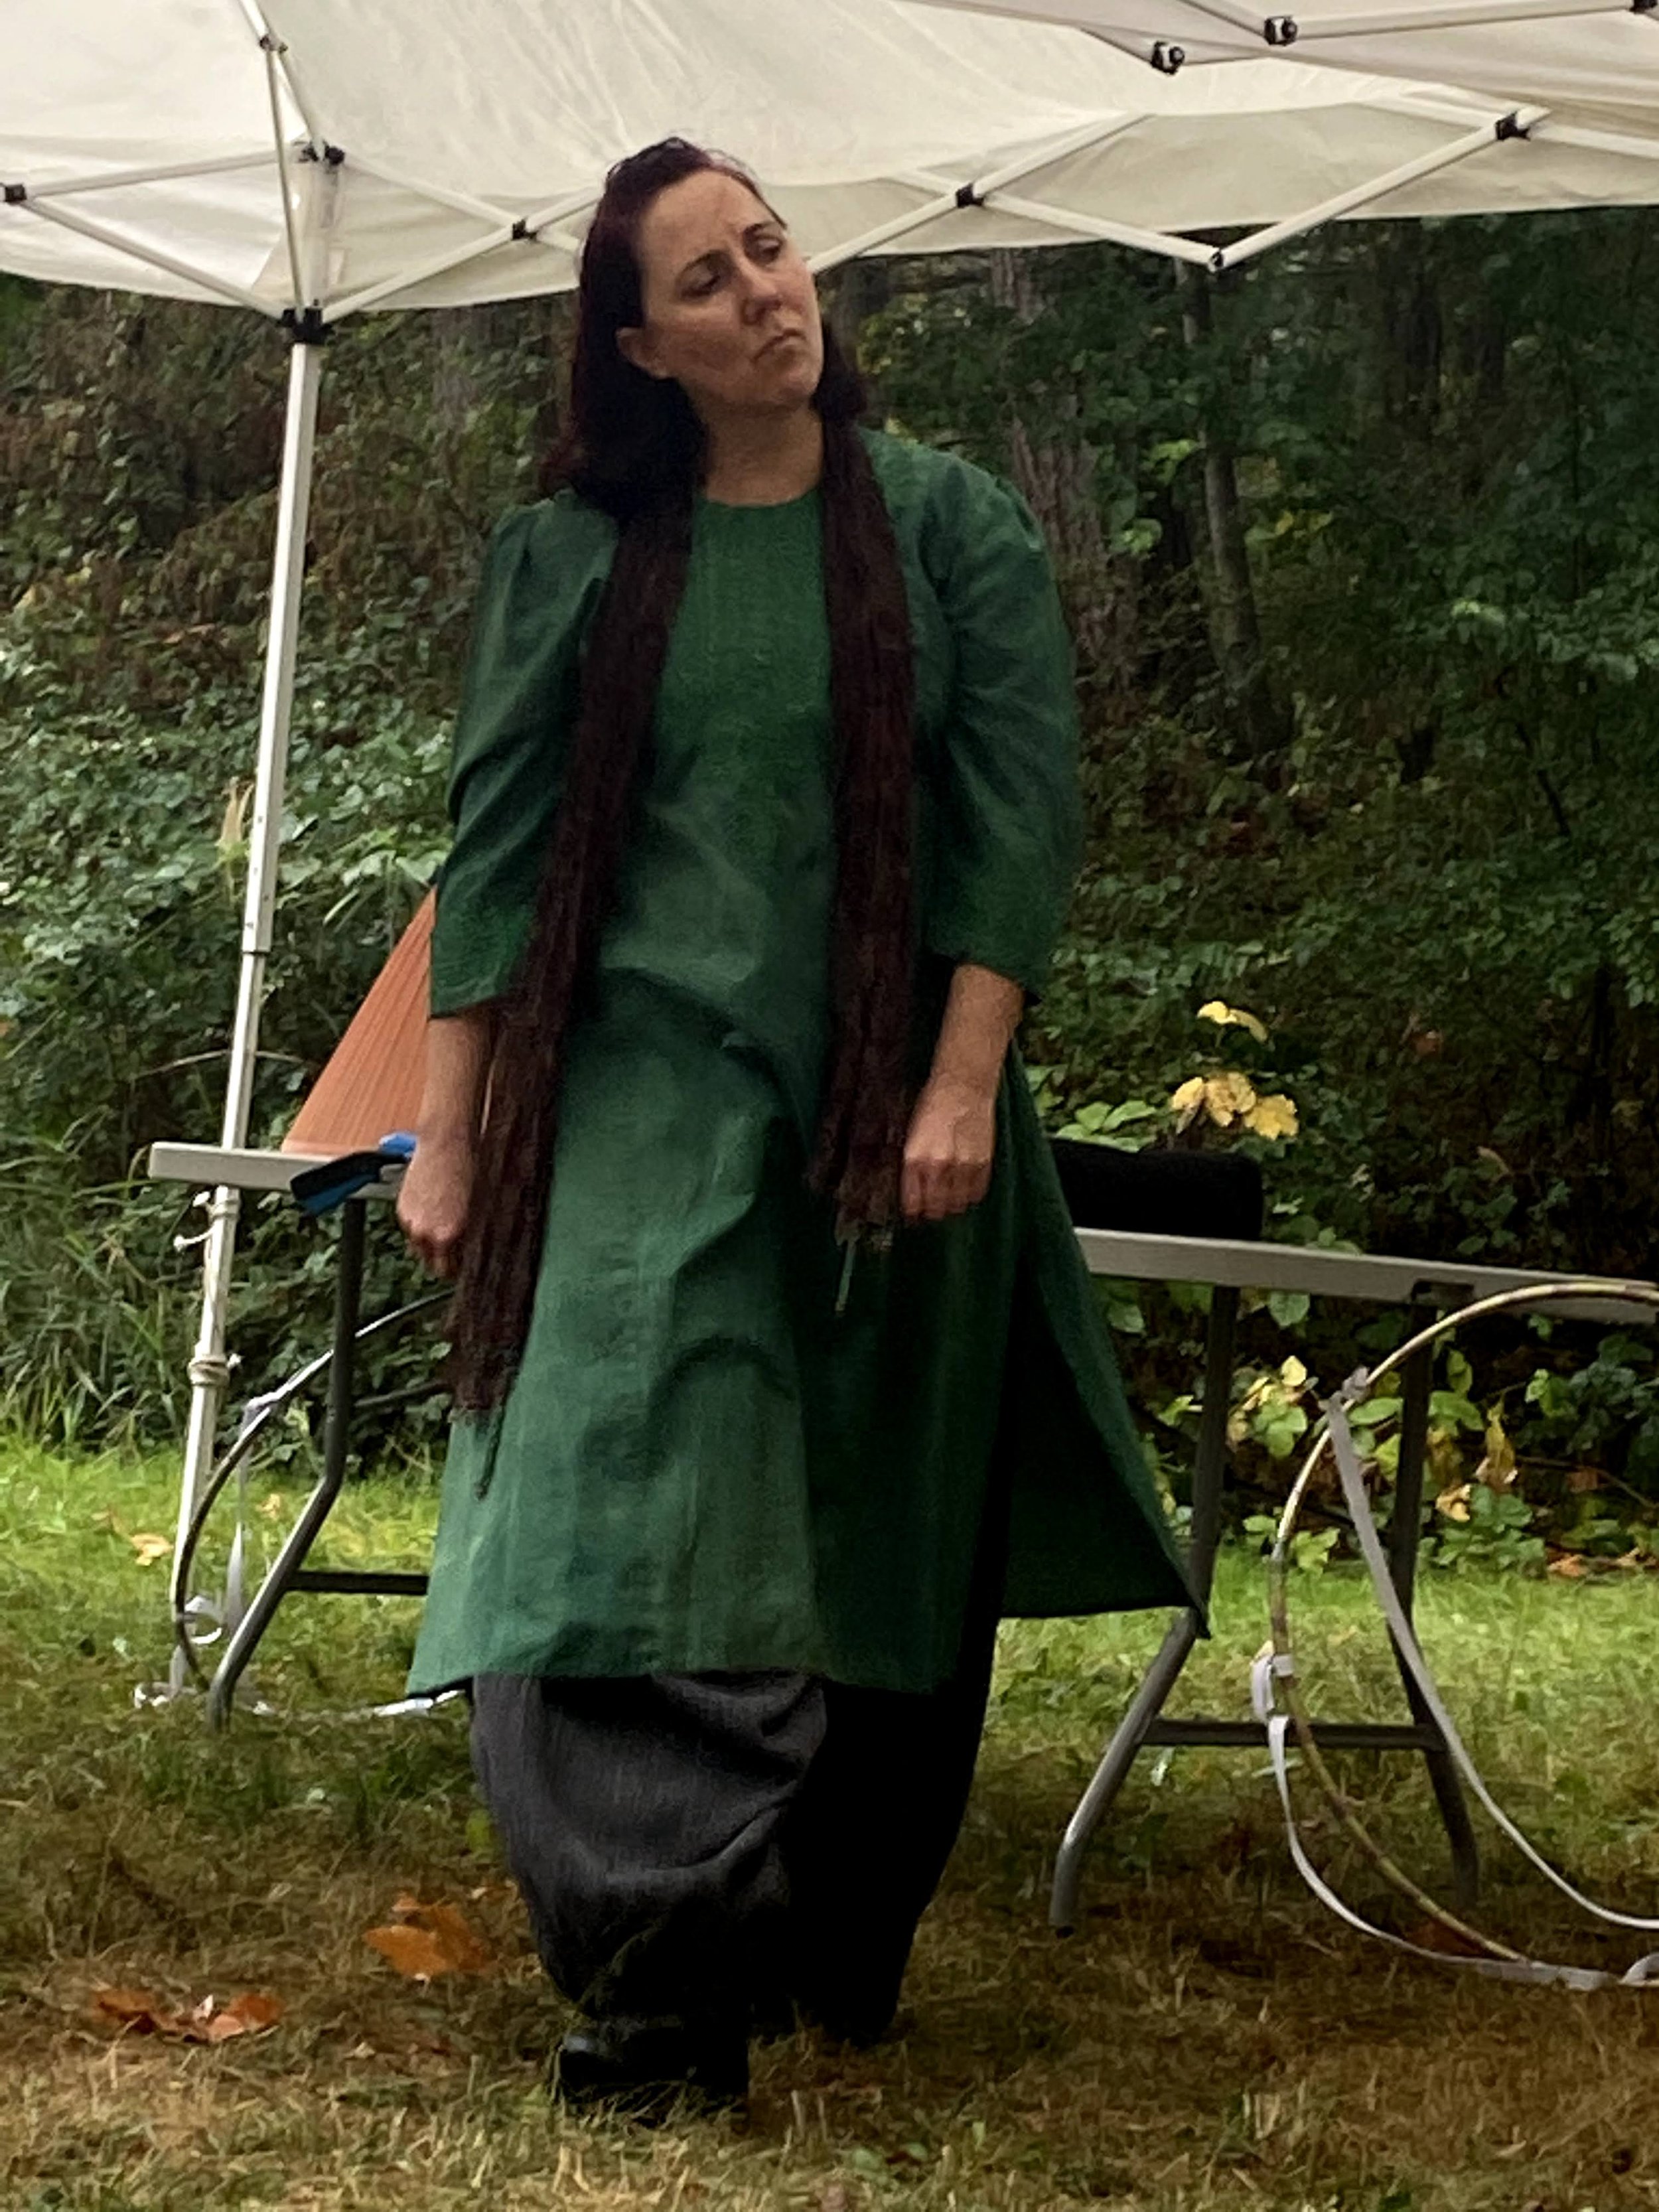 Glynna Goff as Oberon